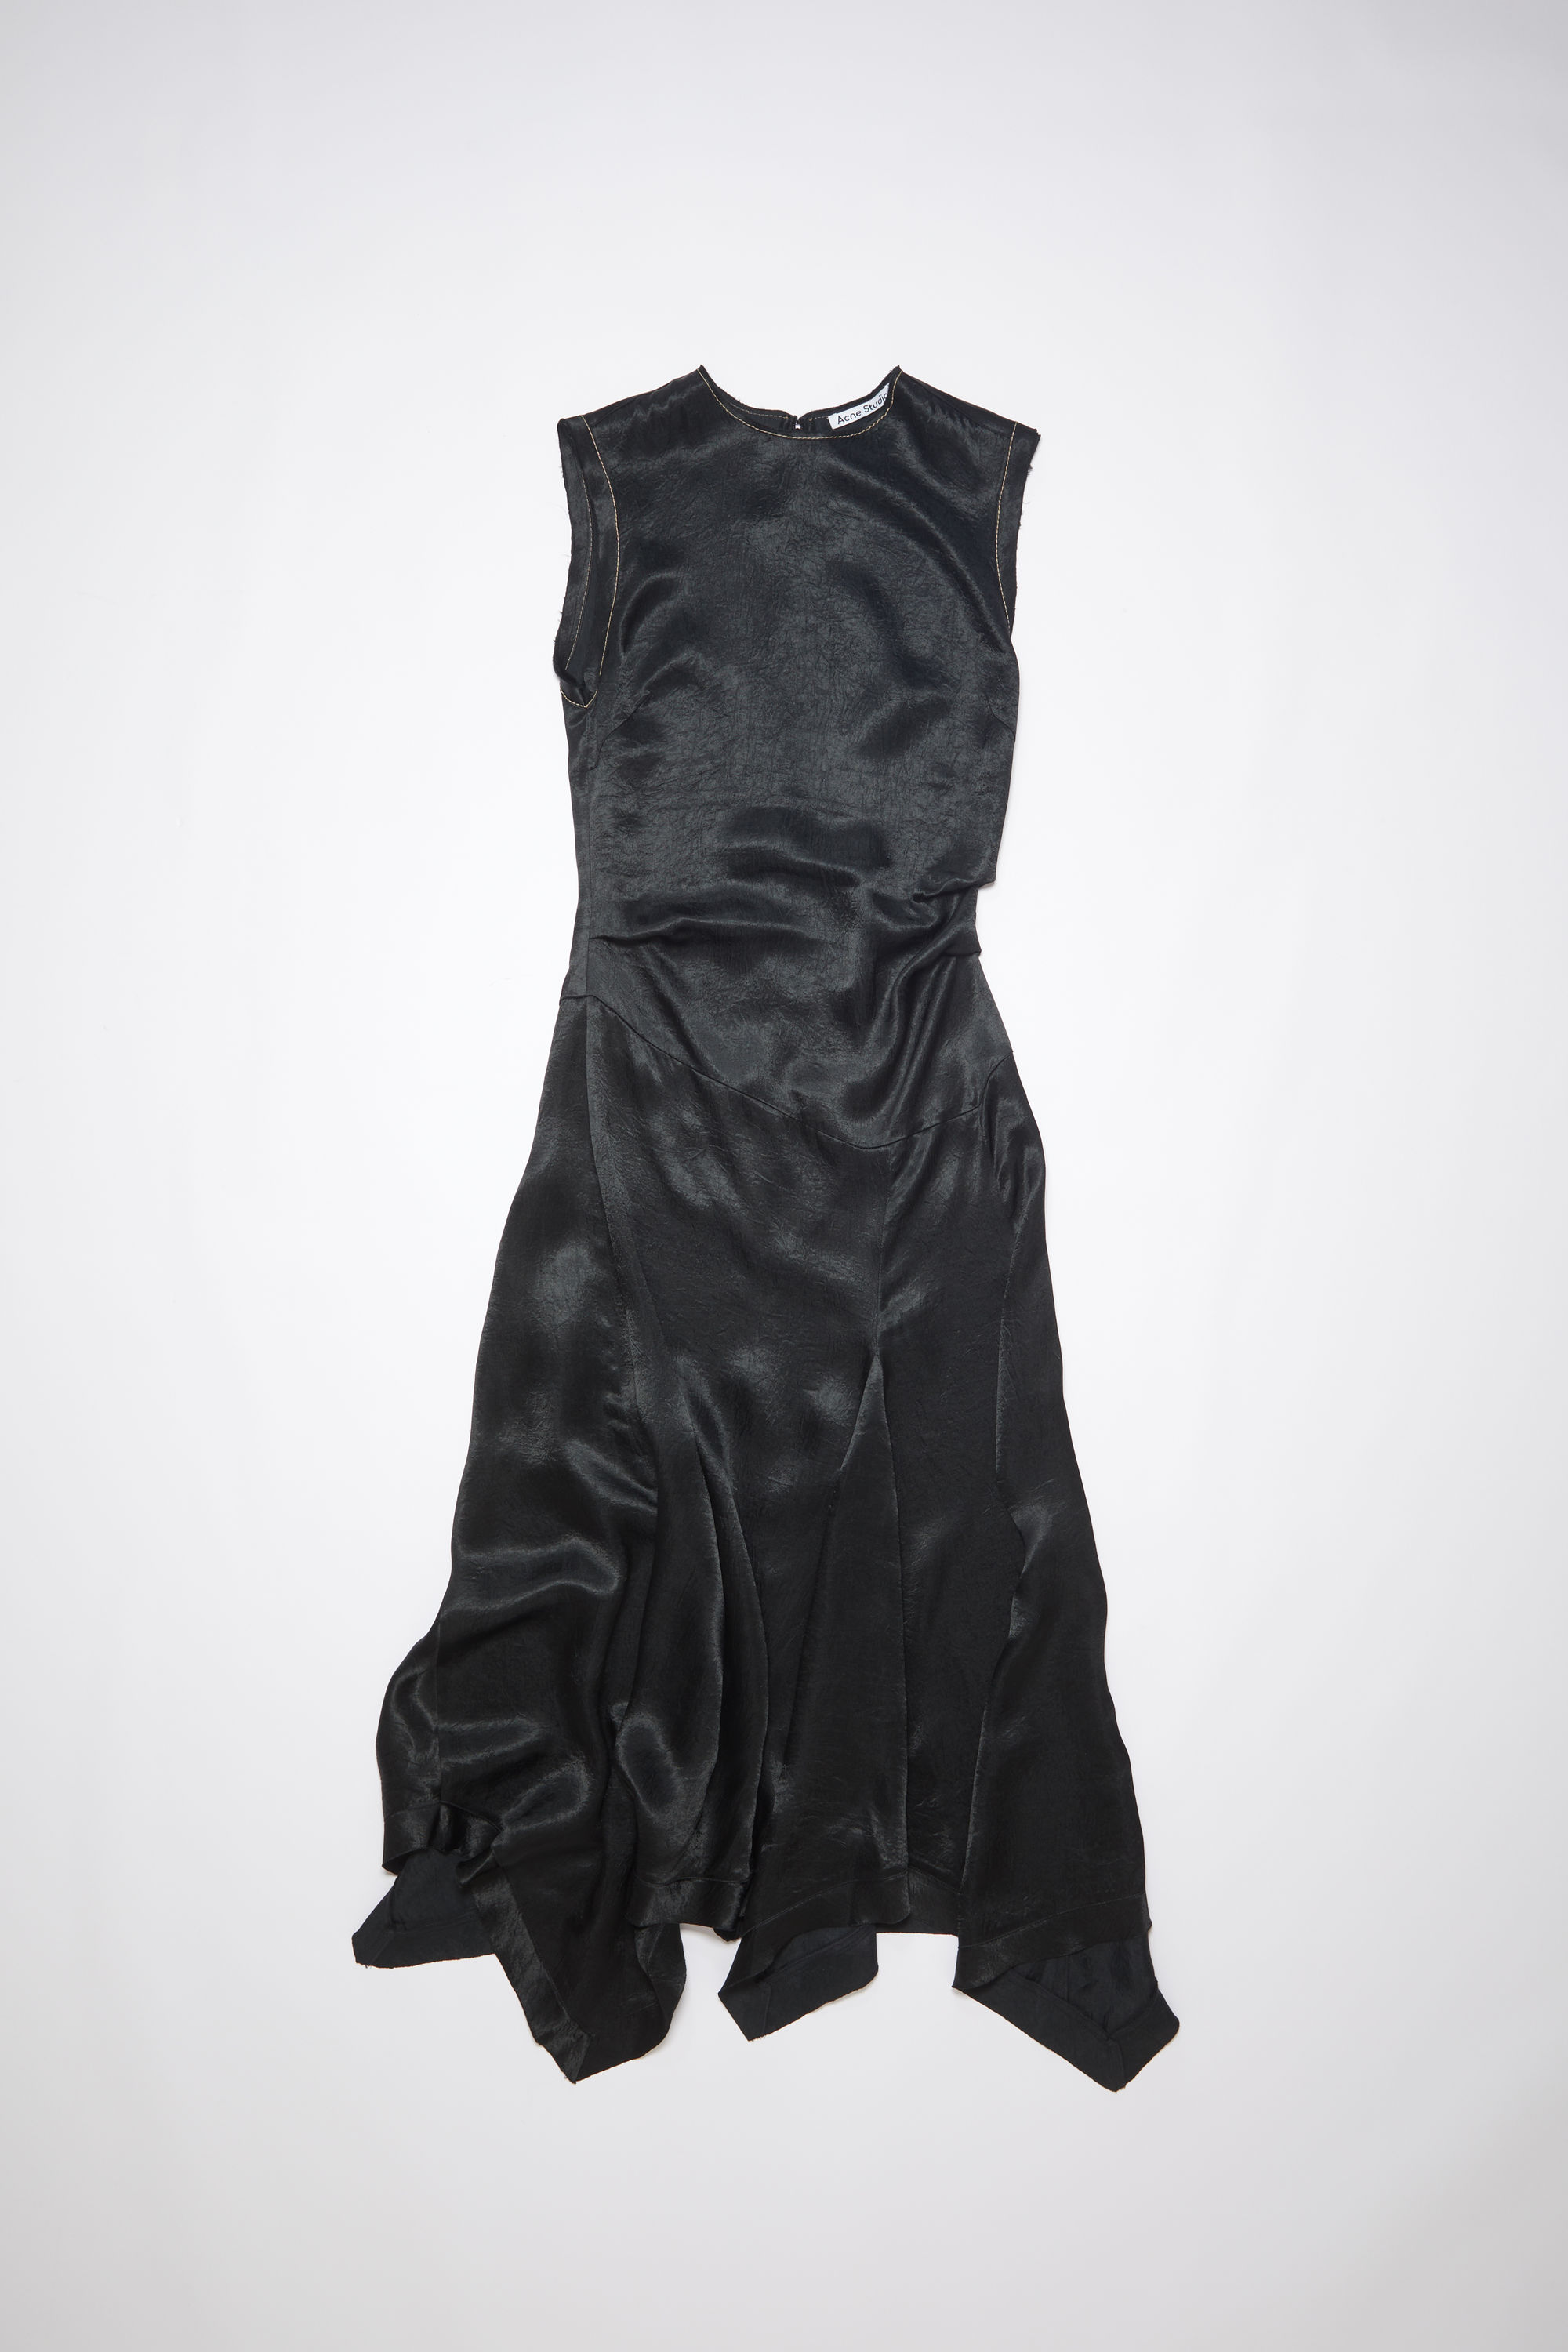 Acne Studios Satin Dress In Black